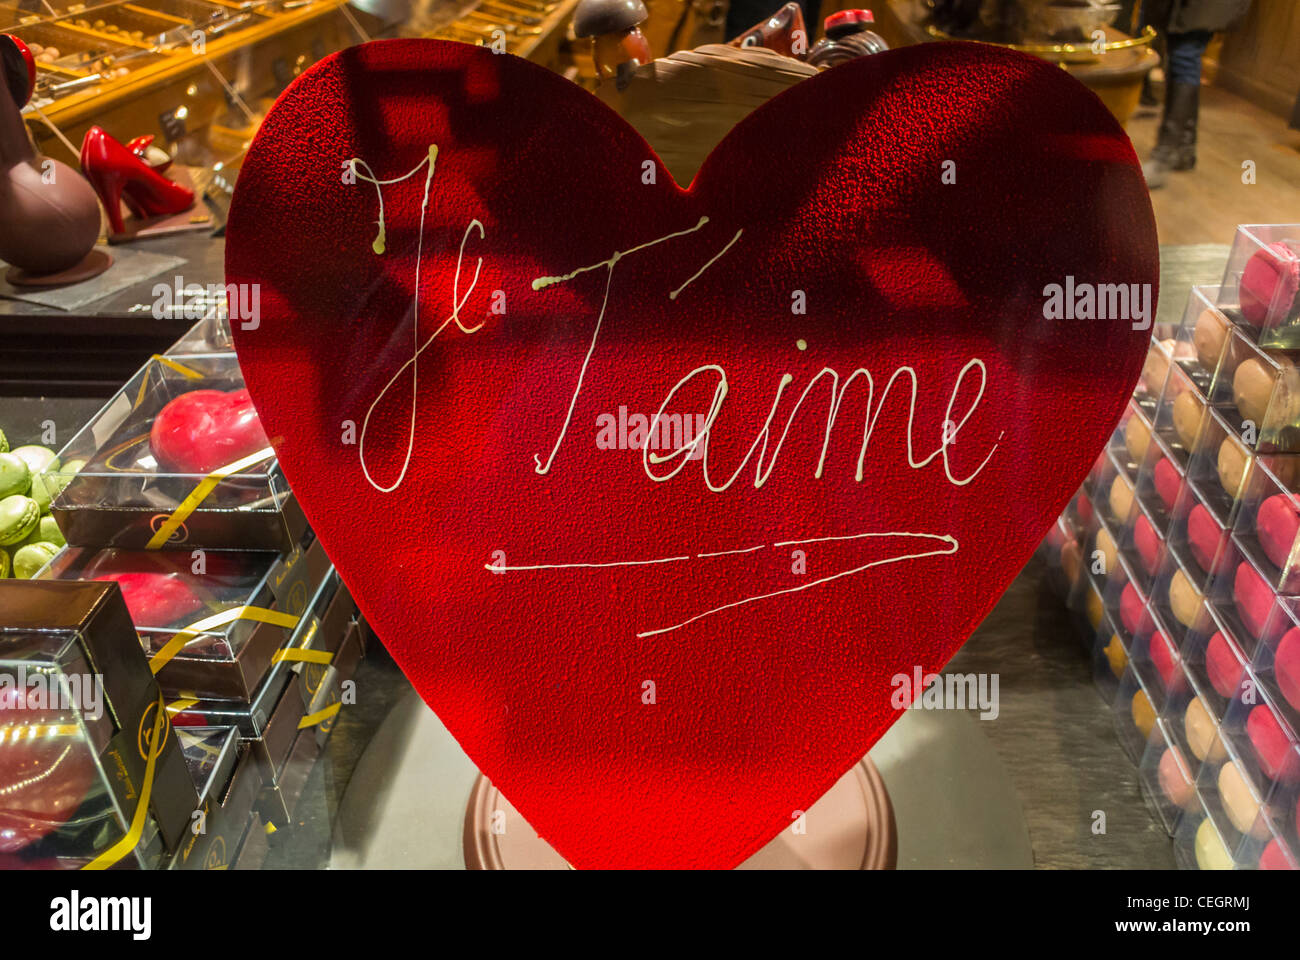 La Saint Valentin en Francia – La Tienda Francesa